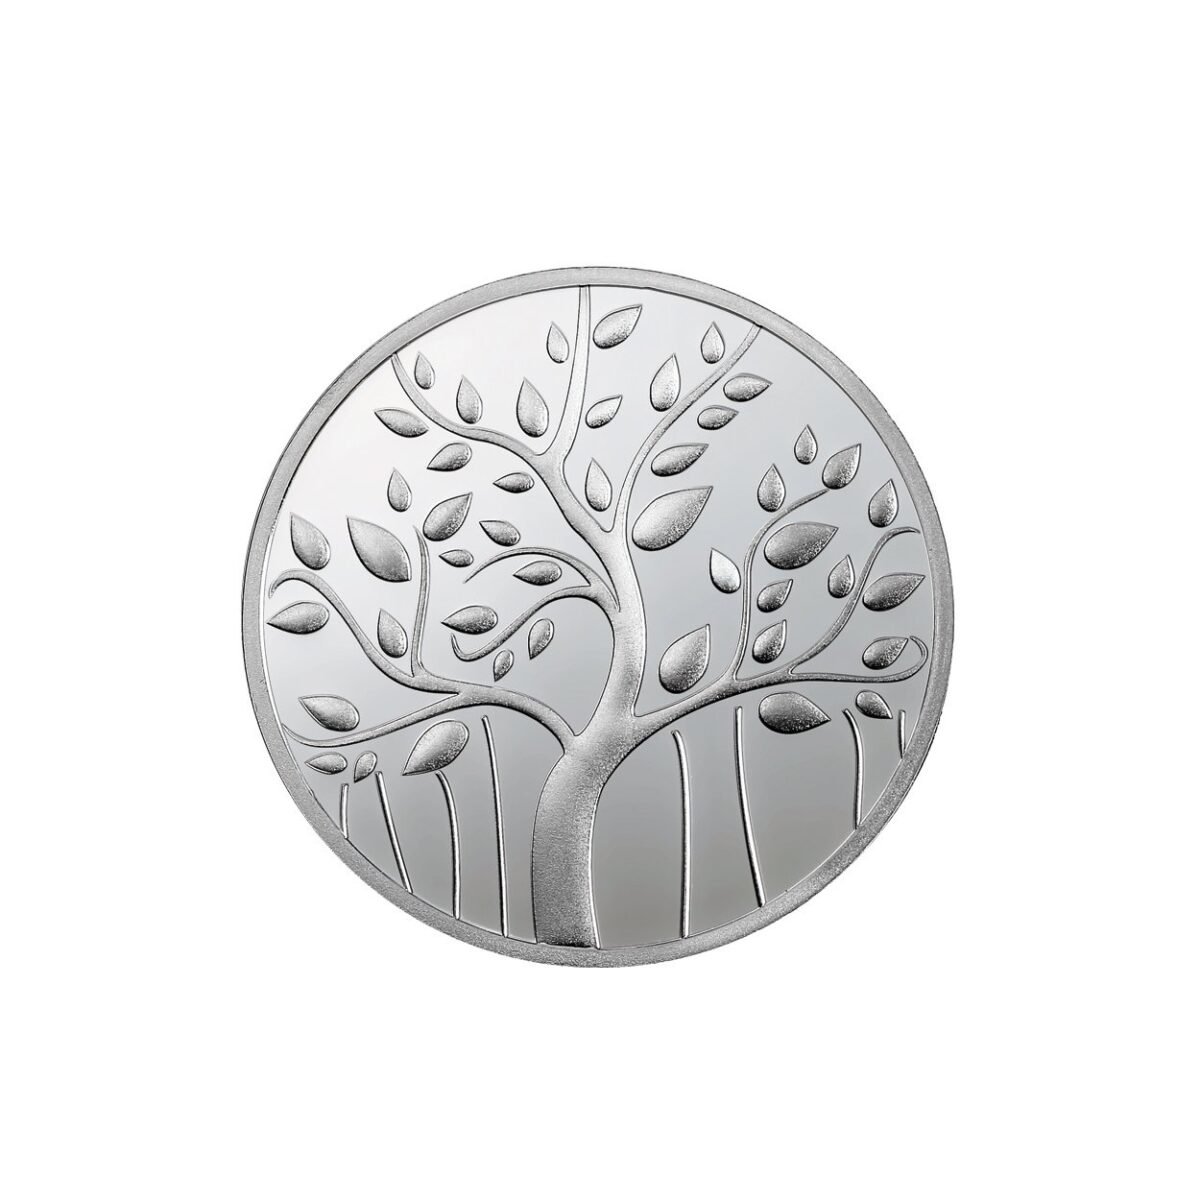 20 grams silver coin